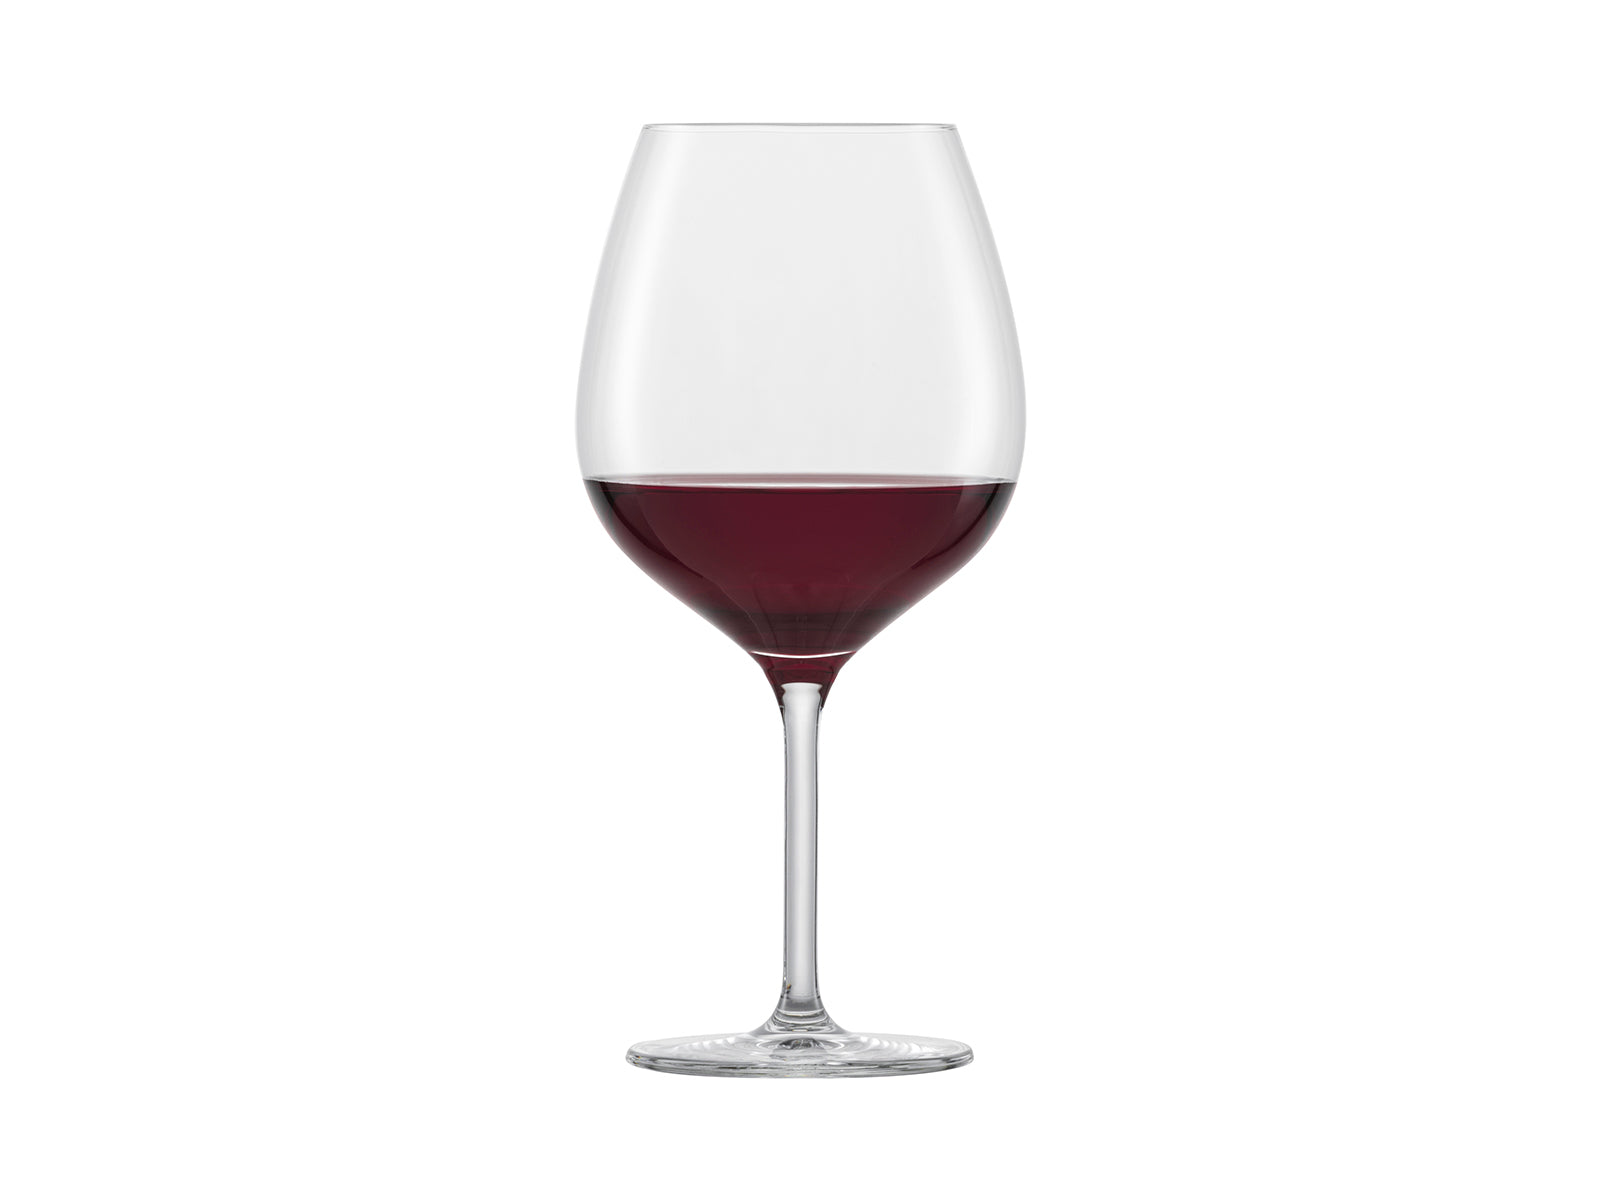 cathyladi Elegantes copas de vino de cristal de alta calidad para vino  tinto o blanco, perfectas par…Ver más cathyladi Elegantes copas de vino de